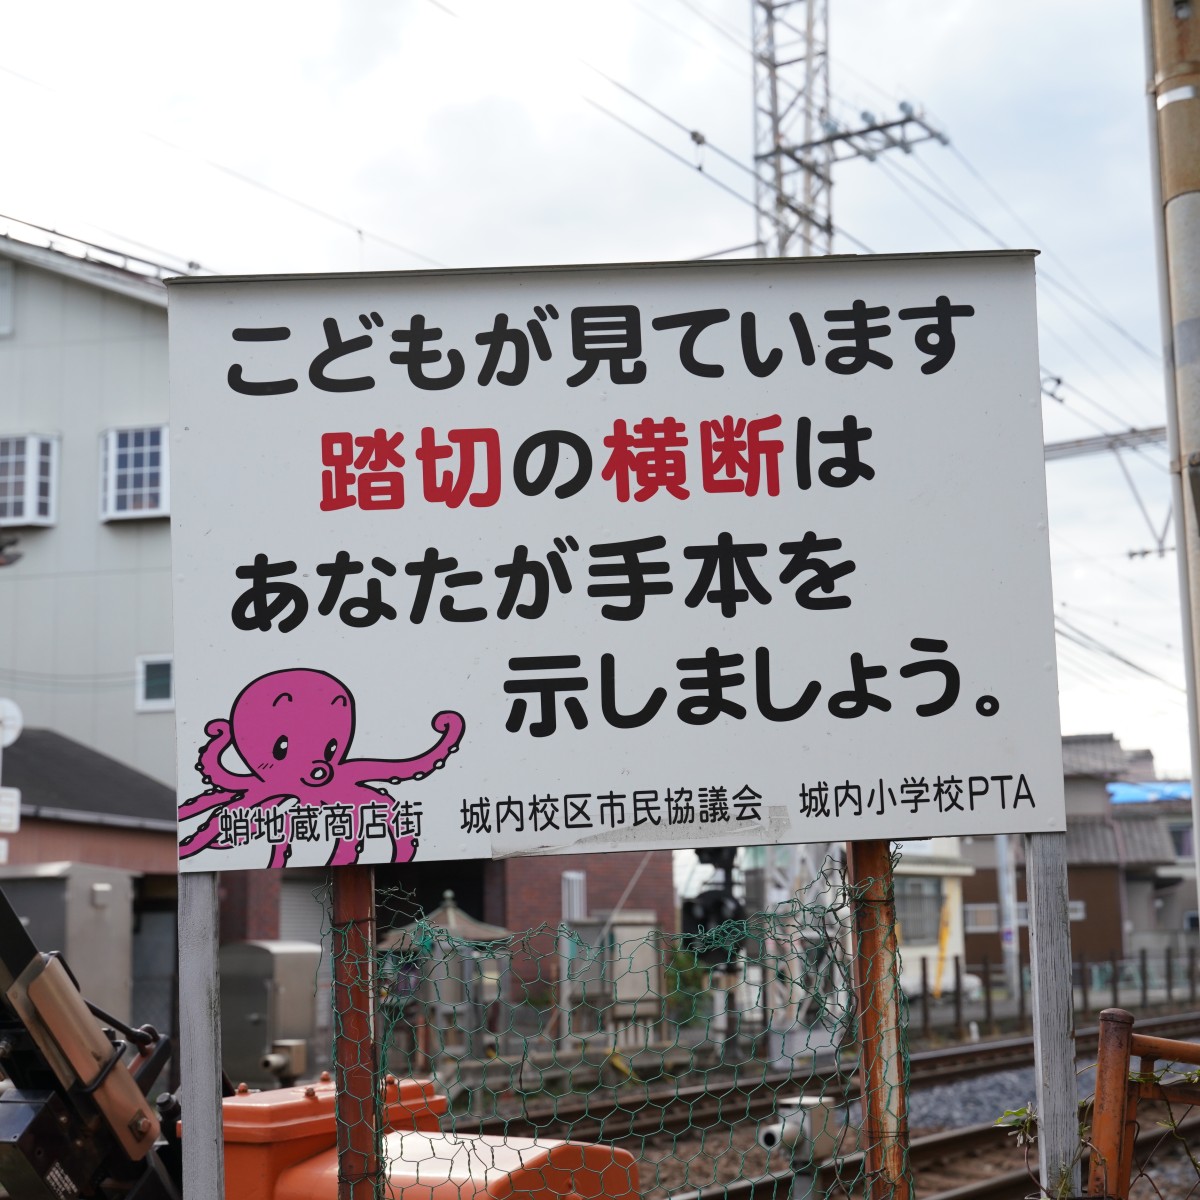 タコの英雄伝説残る岸和田「蛸地蔵」駅でタコ焼きを食べ散歩したのアイキャッチ画像